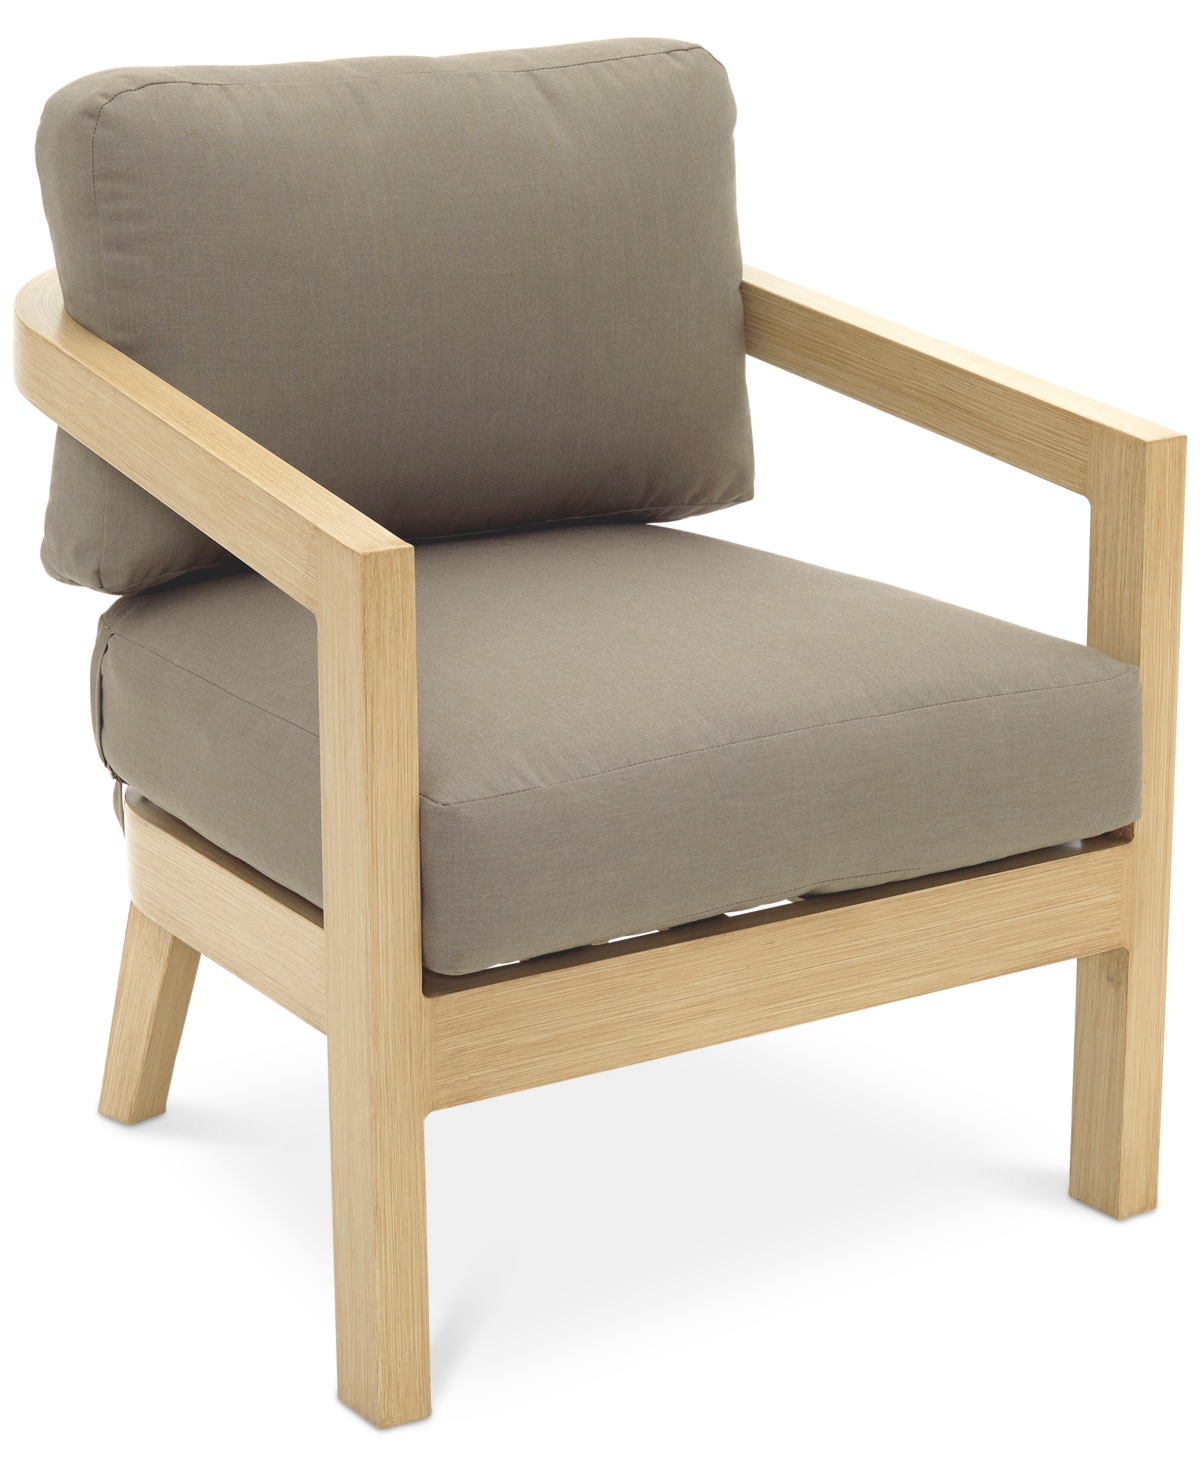 Shop Agio Reid Outdoor Club Chair, Created For Macy's In Solartex Bark